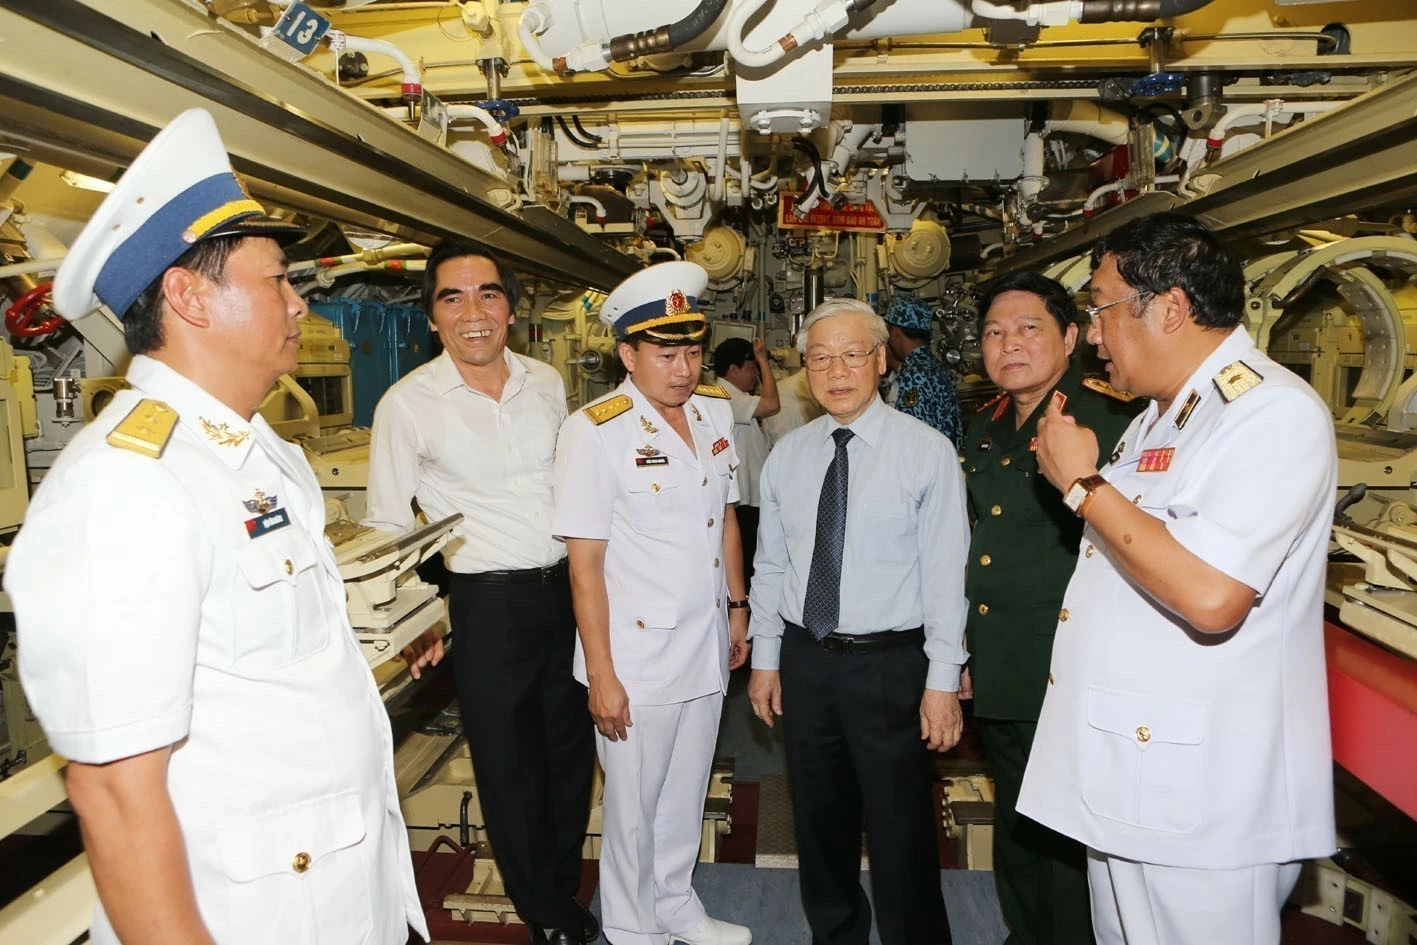 Tổng Bí thư Nguyễn Phú Trọng với cán bộ chiến sĩ Hải quân